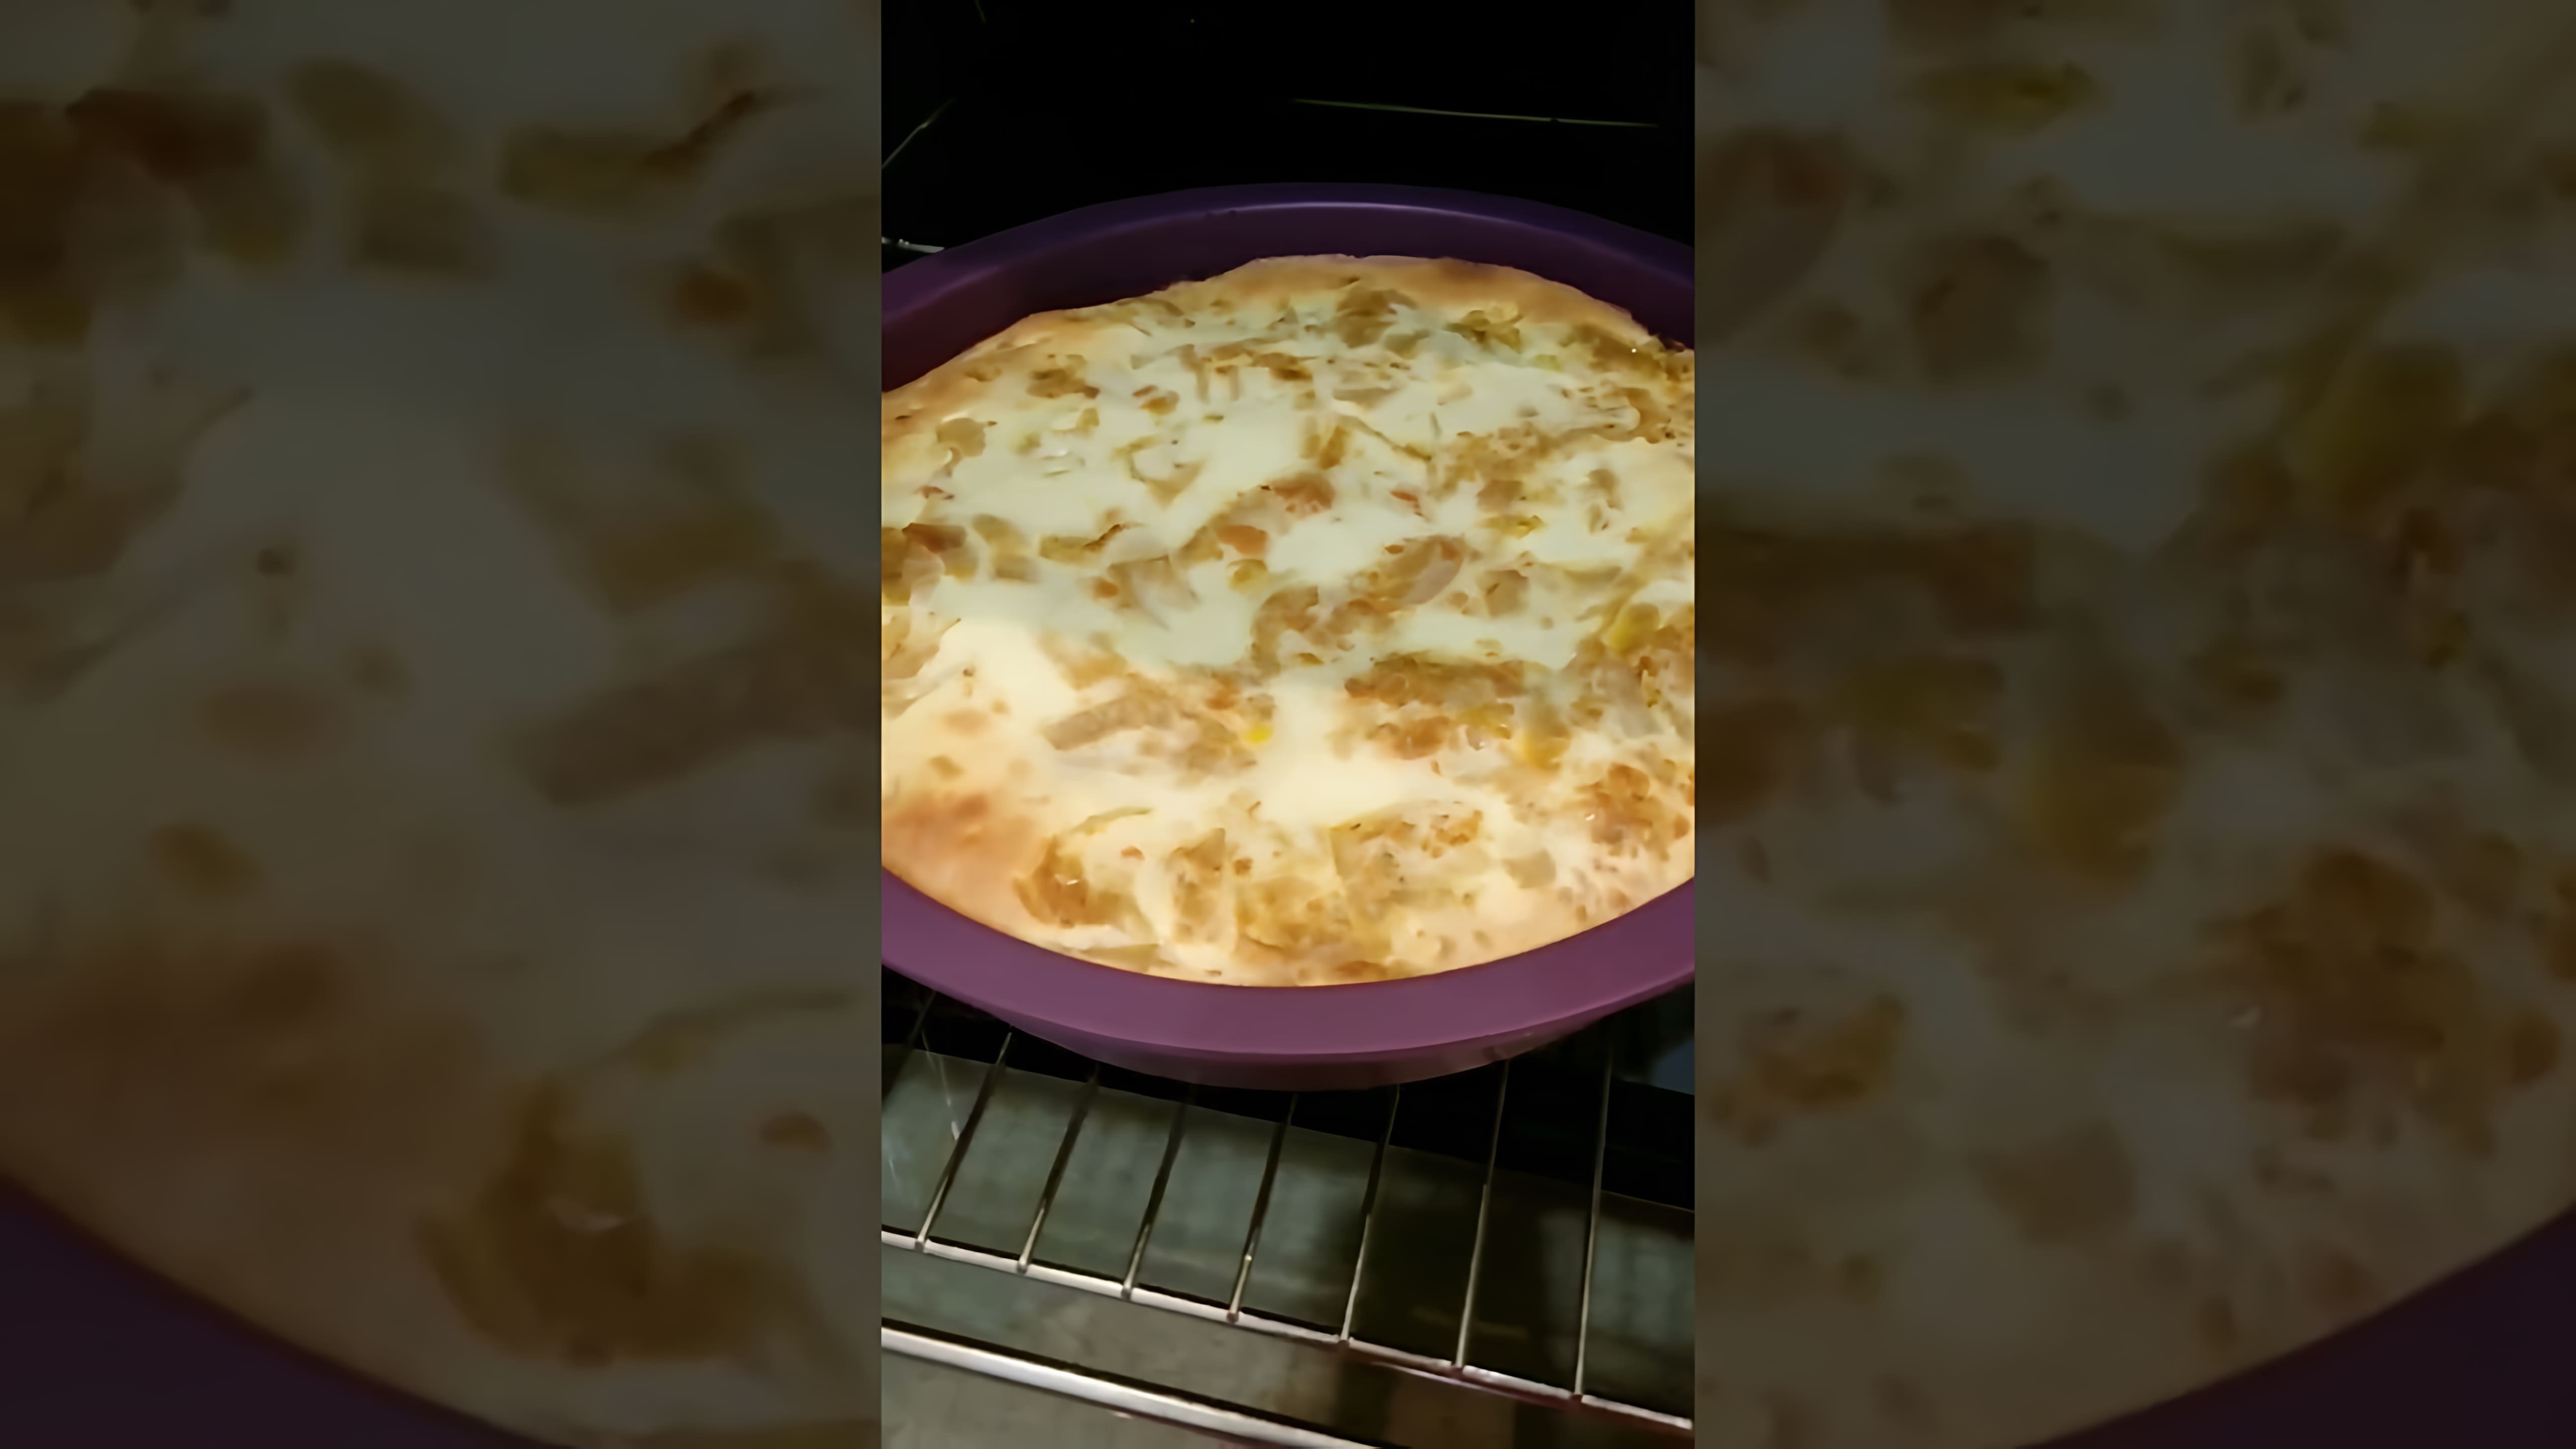 В этом видео демонстрируется процесс приготовления заливного пирога с капустной начинкой в силиконовой форме